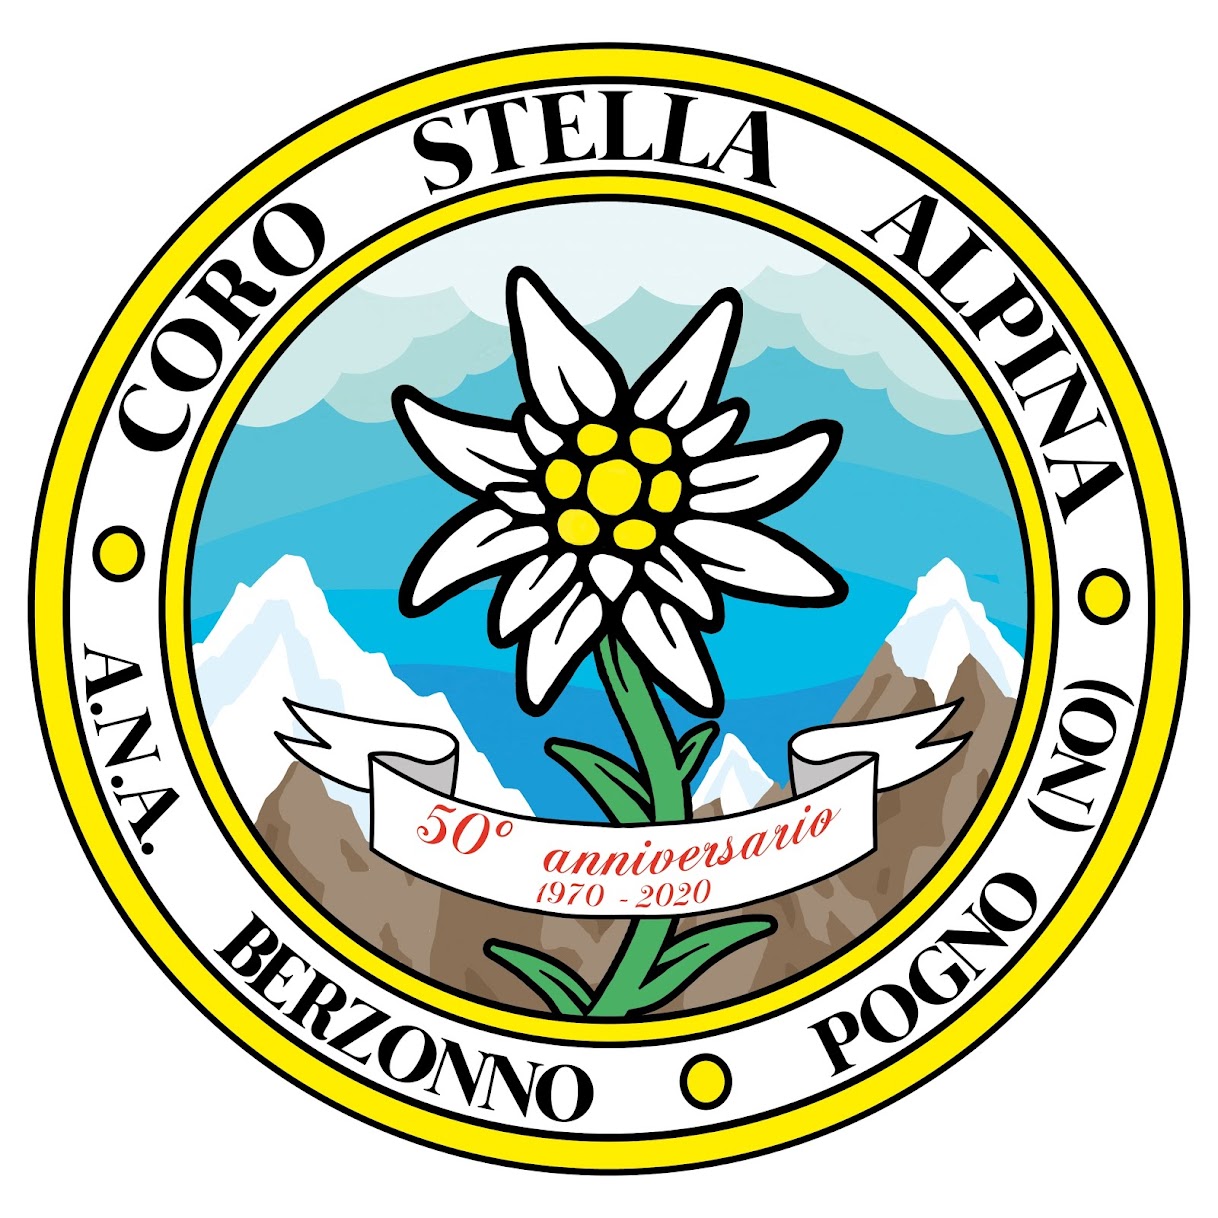 Coro ANA Stella Alpina di Berzonno